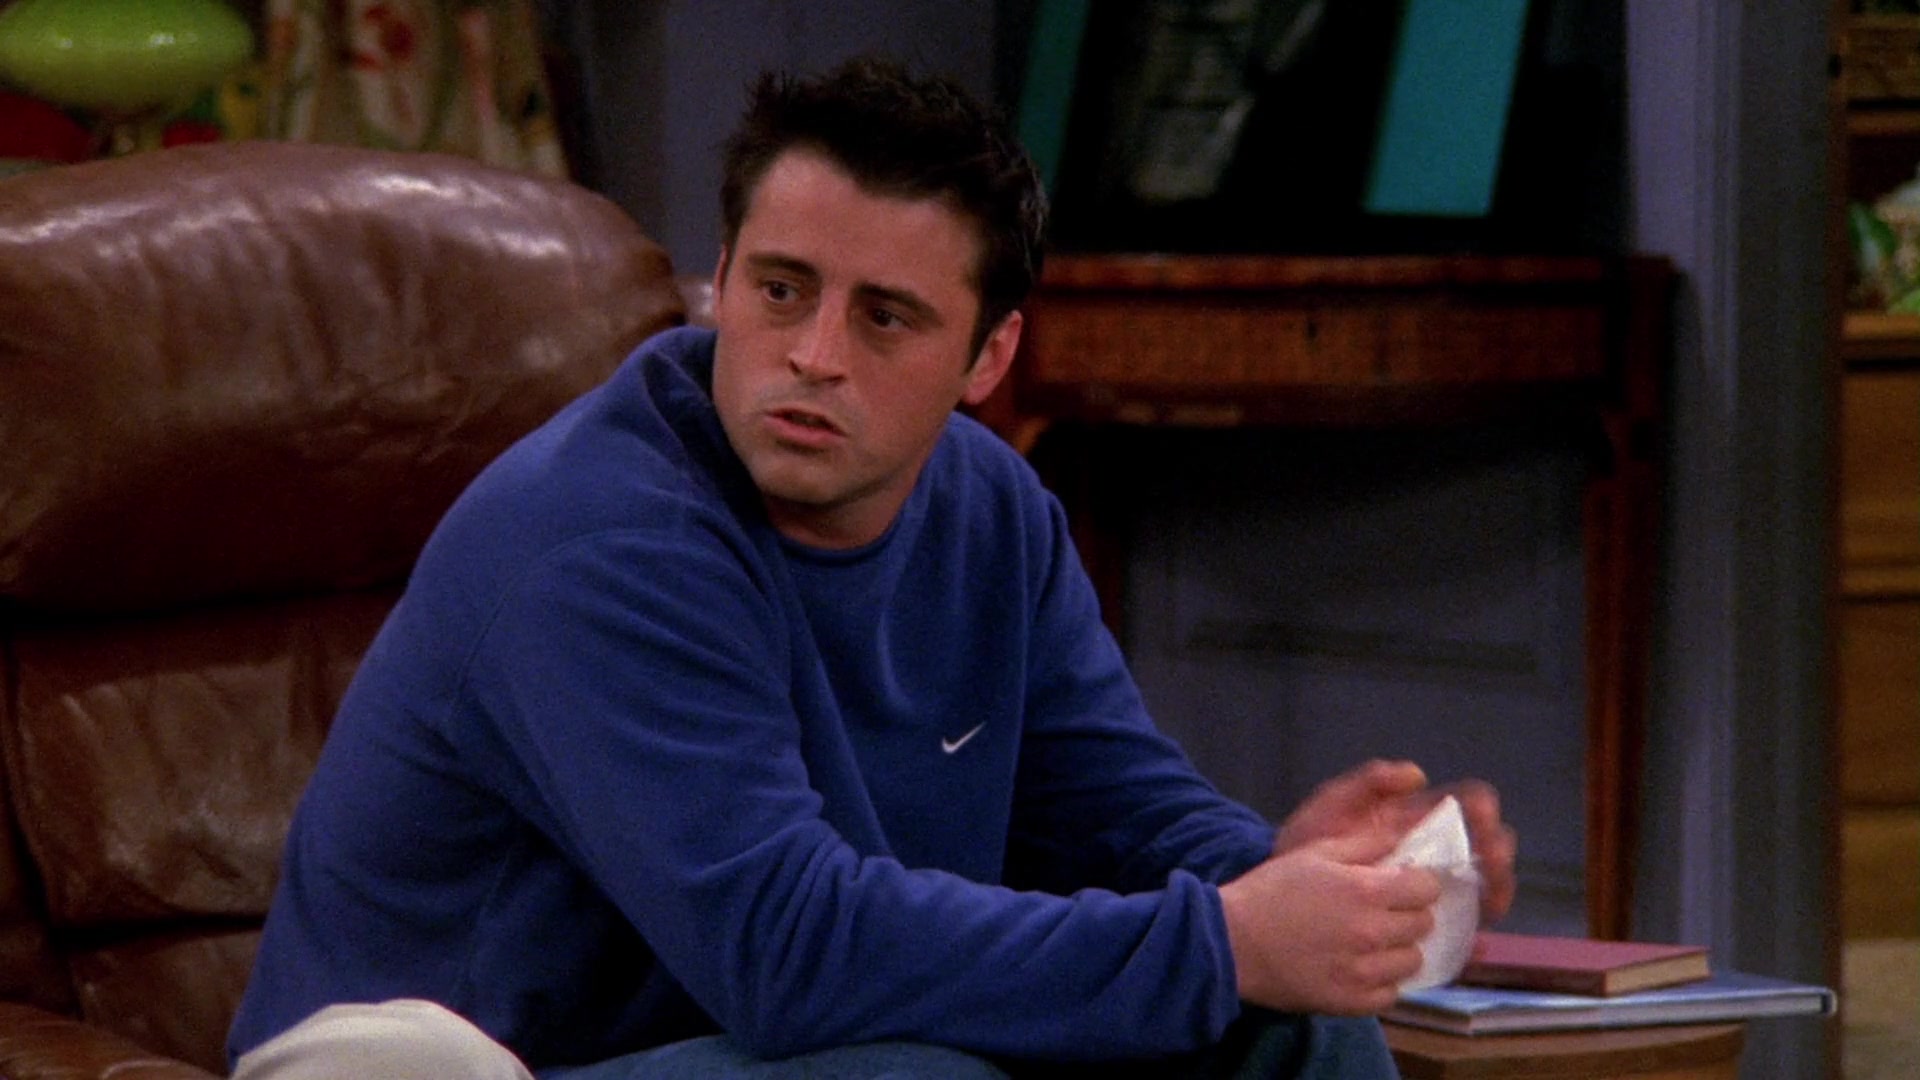 Nike Blue Sweatshirt Worn By Matt LeBlanc (Joey Tribbiani) In Friends ...